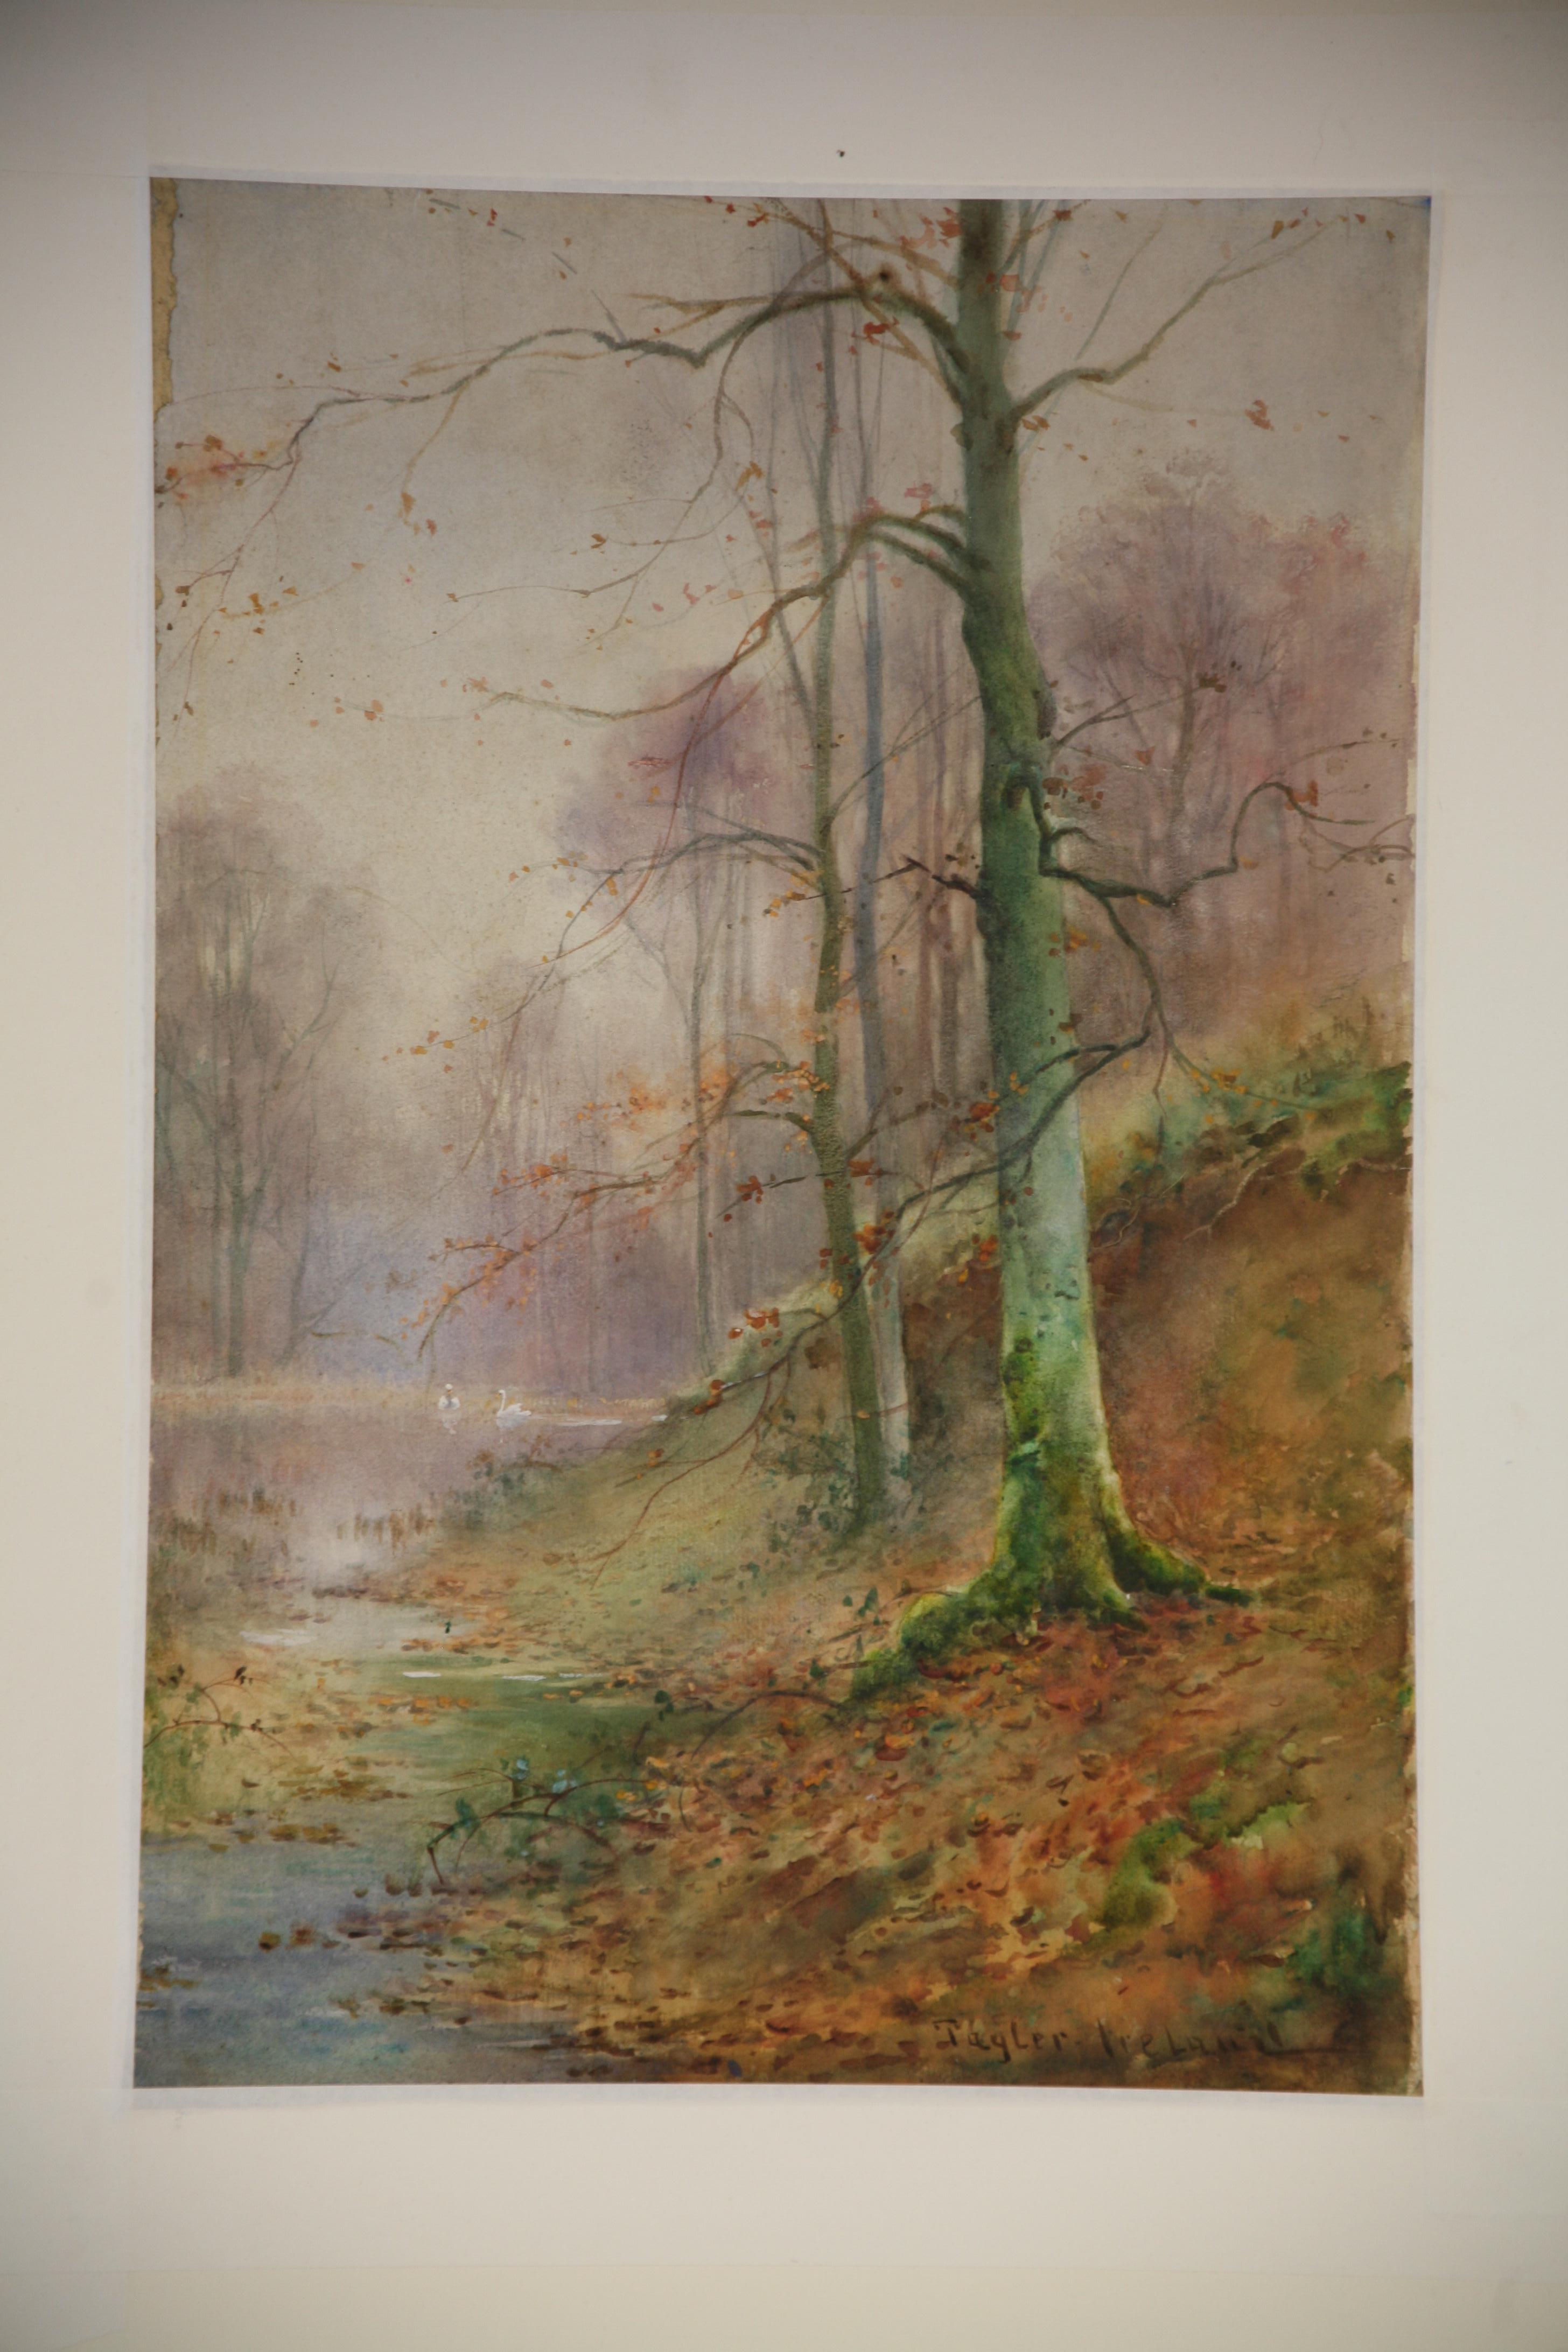 Hervorragende Aquarellzeichnung von Tayler Ireland Tayler Ireland war ein britischer Landschaftsmaler, der um die Jahrhundertwende in Öl und Aquarell arbeitete und vermutlich der Sohn des in London lebenden Künstlers Thomas Ireland war. Thomas